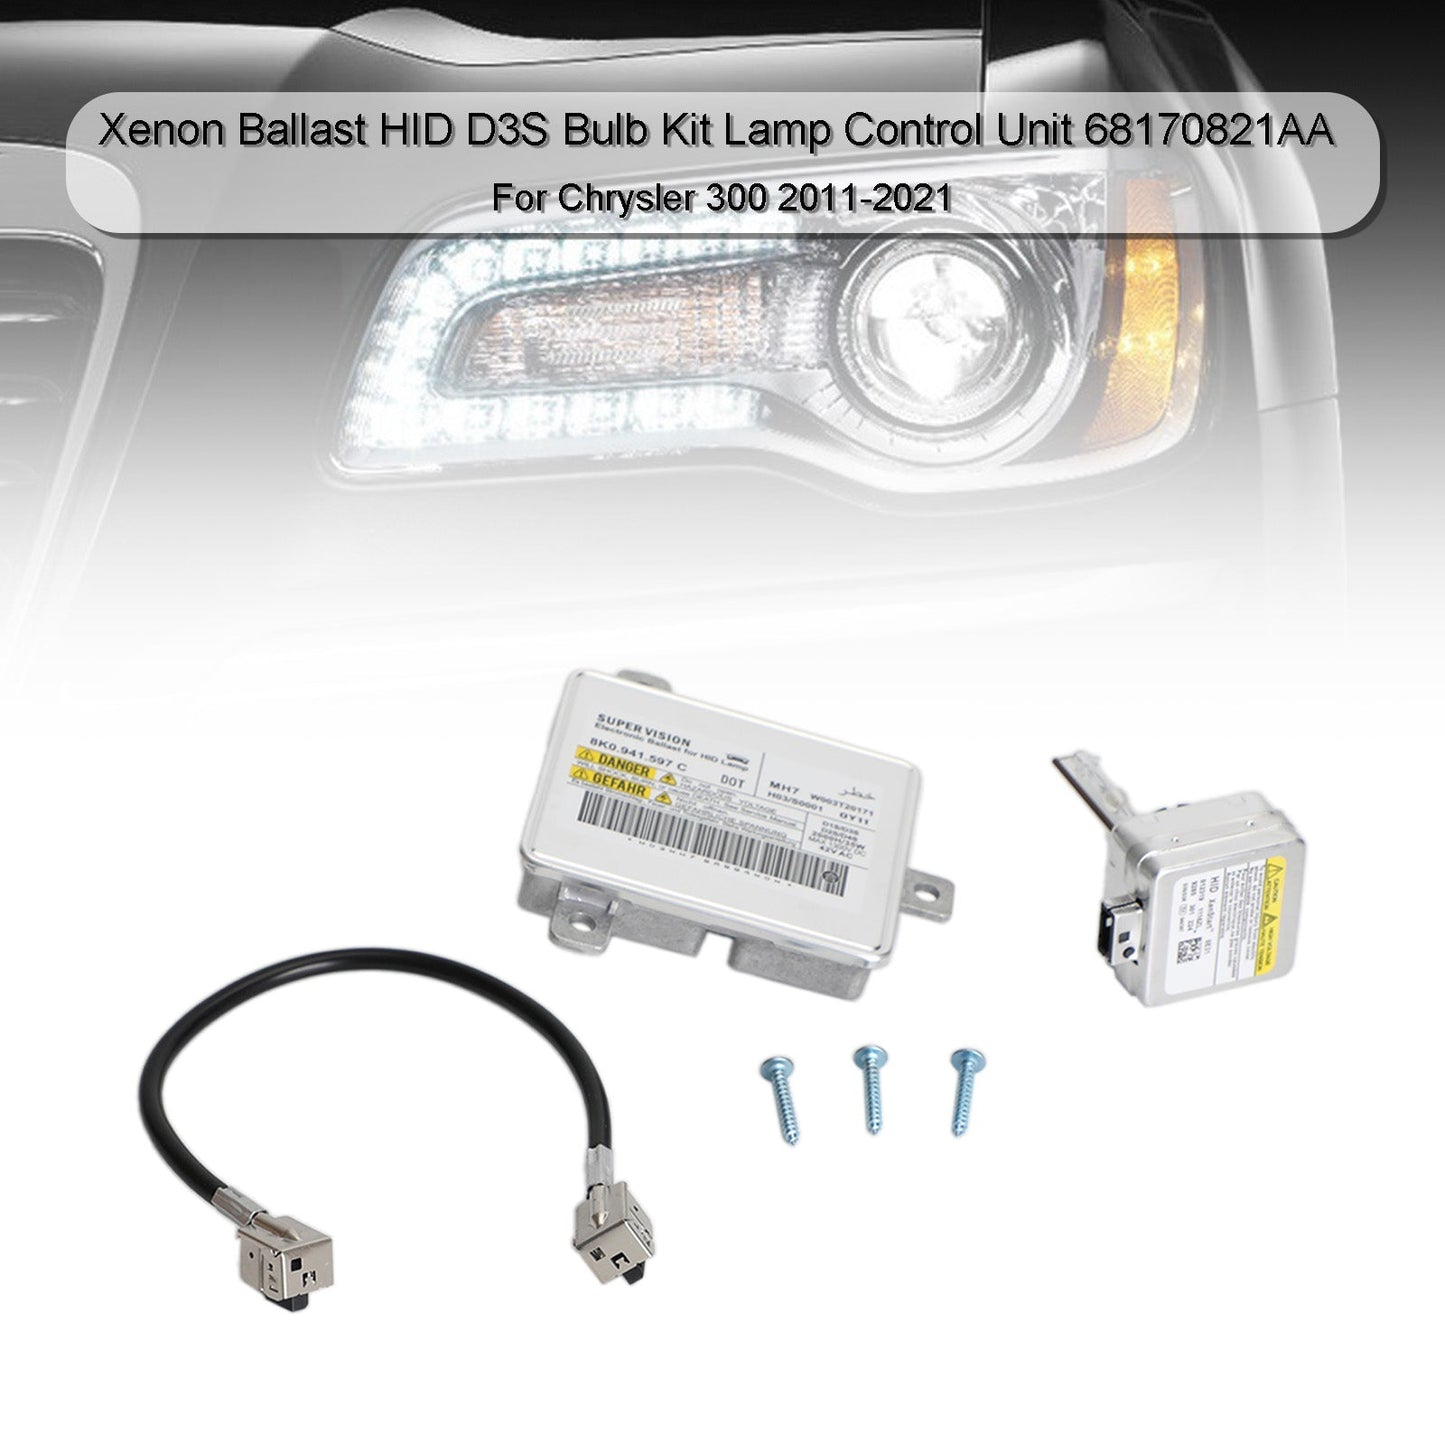 Xenon Ballast HID D3S Bulb Lamp Control Unit 68170821AA For Chrysler 300 11-21